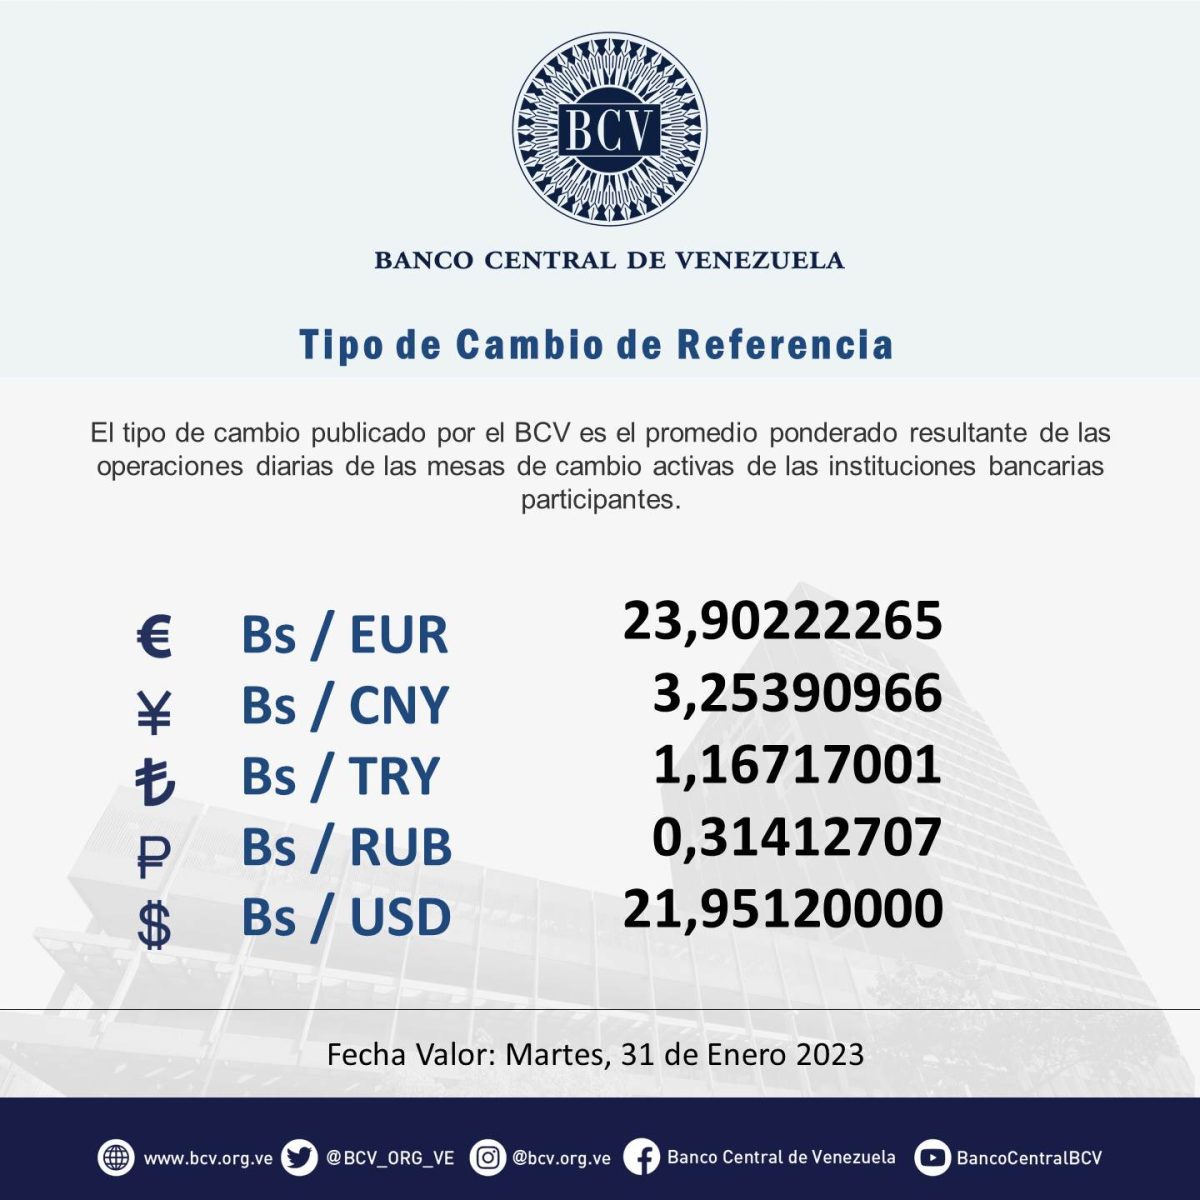 dolartoday en venezuela precio del dolar este martes 31 de enero de 2023 laverdaddemonagas.com bcv63